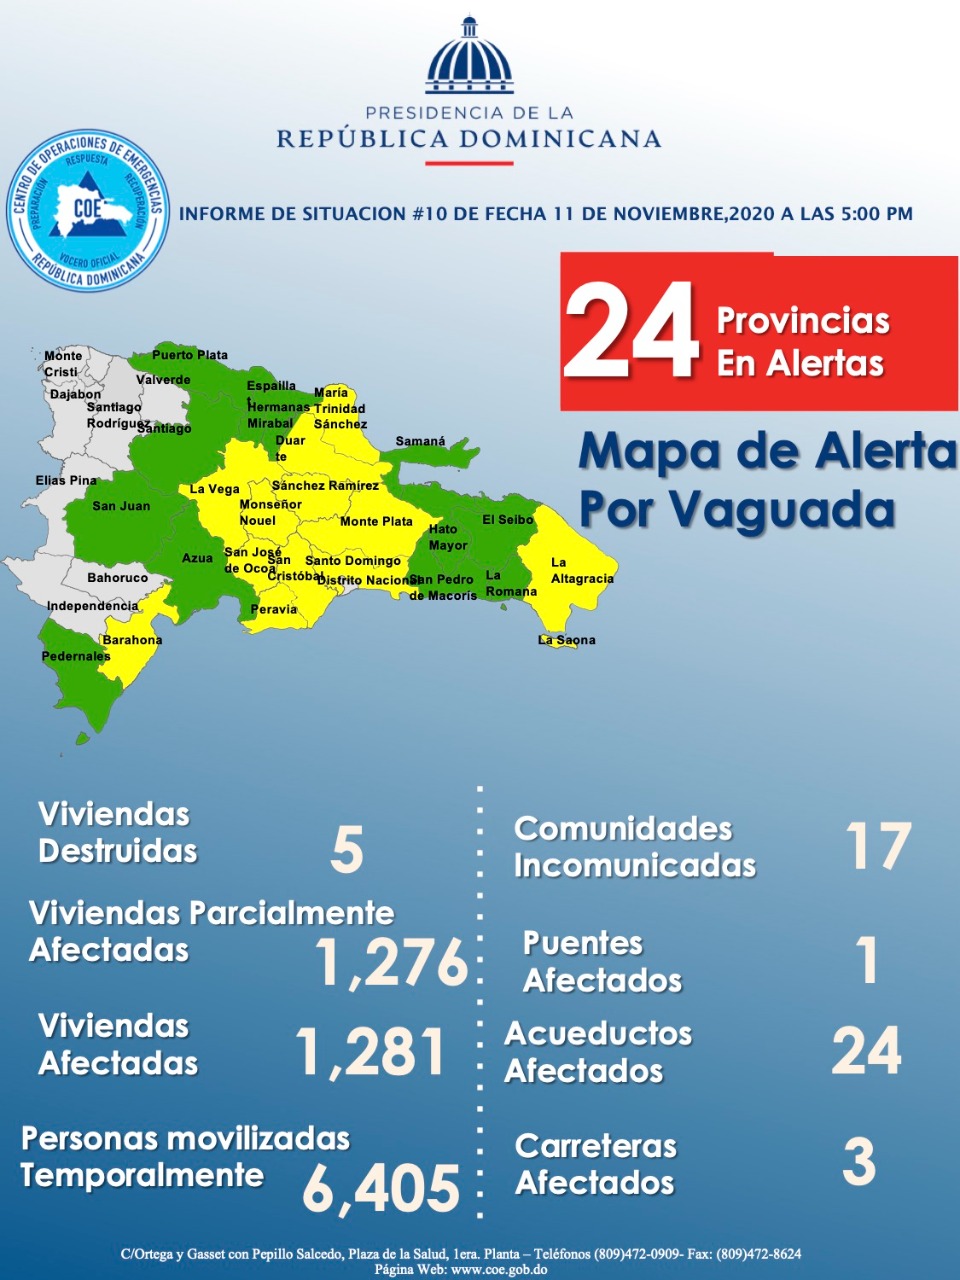 COE mantiene alerta para 24 provincias por incidencia de Vaguada